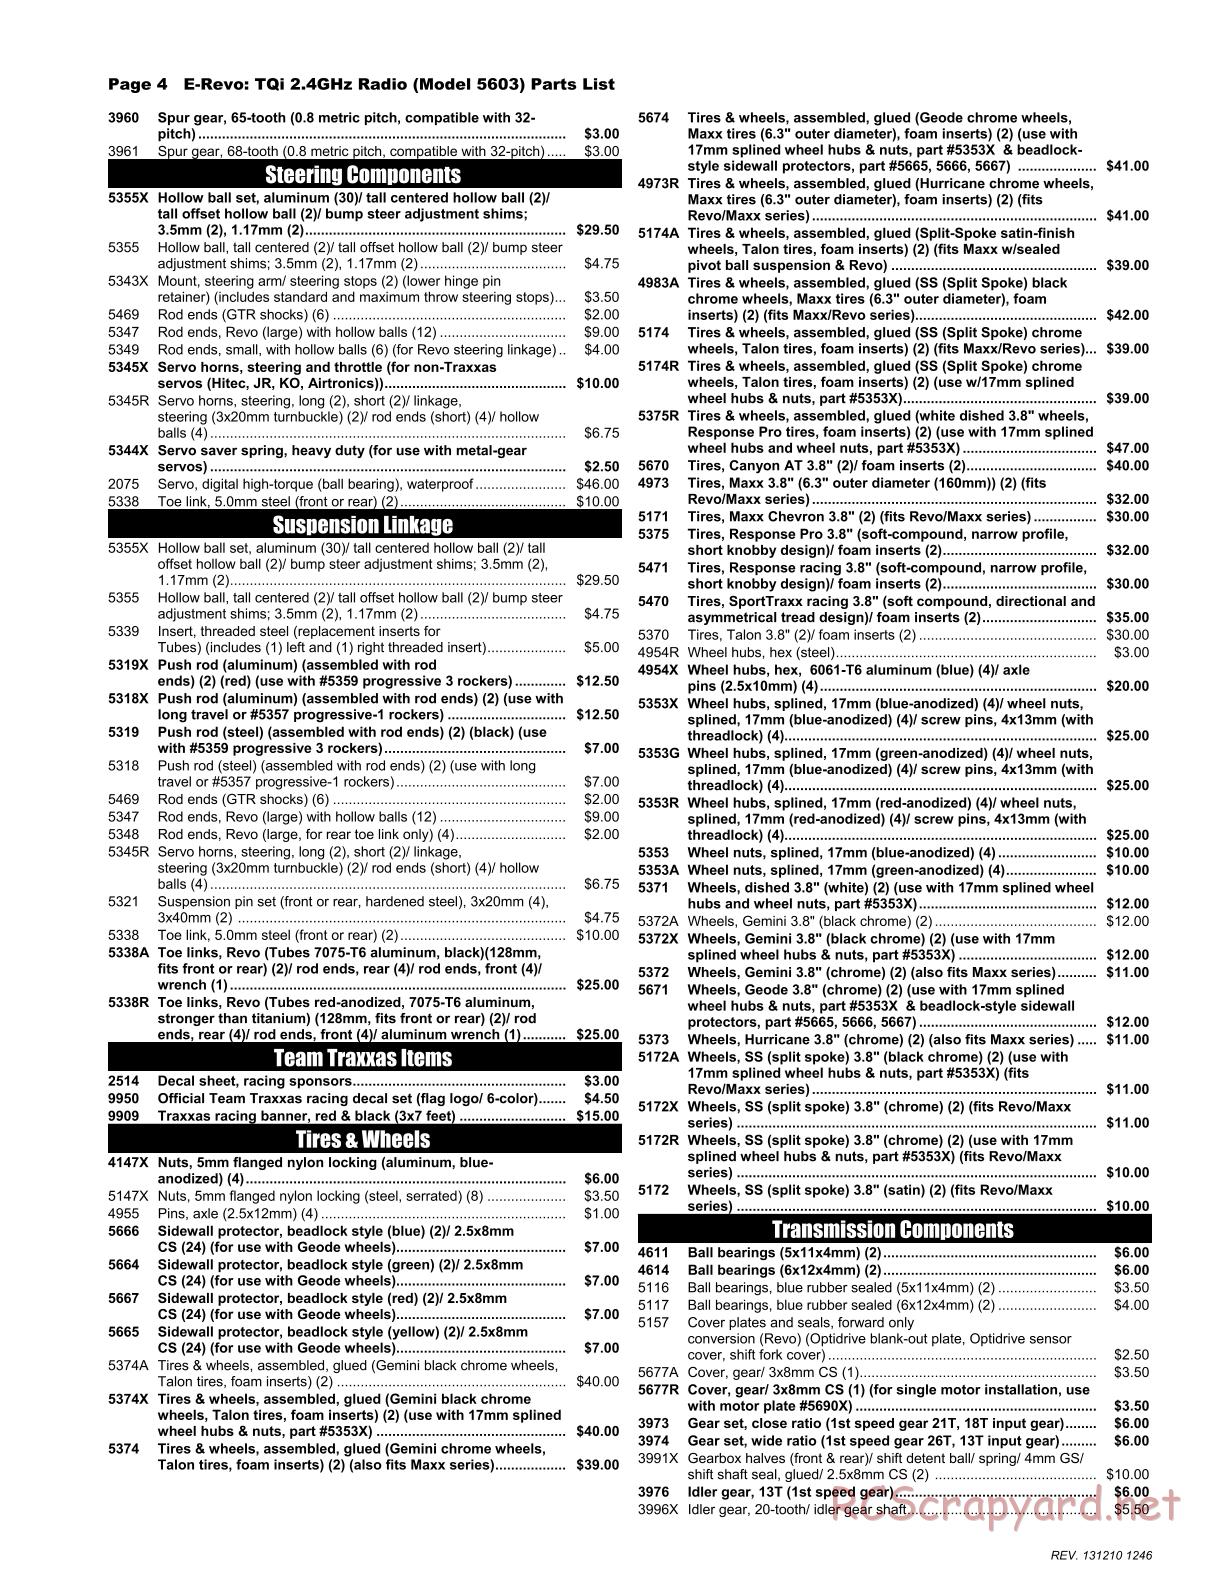 Traxxas - E-Revo (2010) - Parts List - Page 4